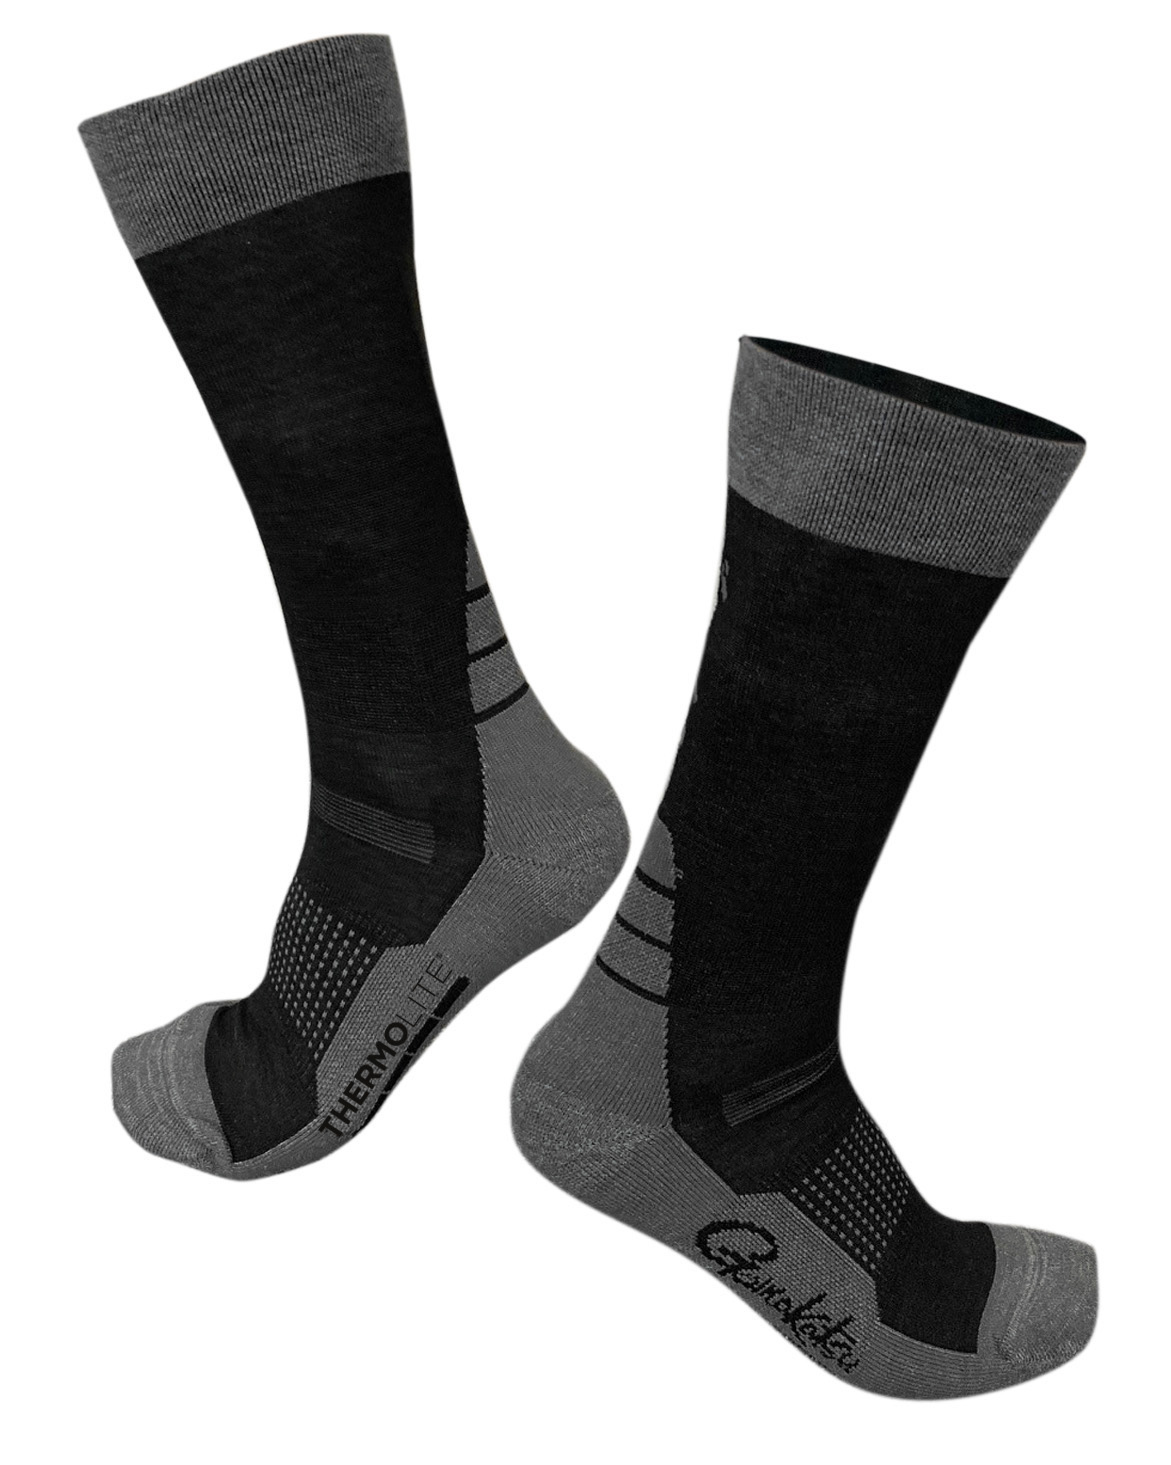 Gamakatsu G-Socks Thermolite 35-38